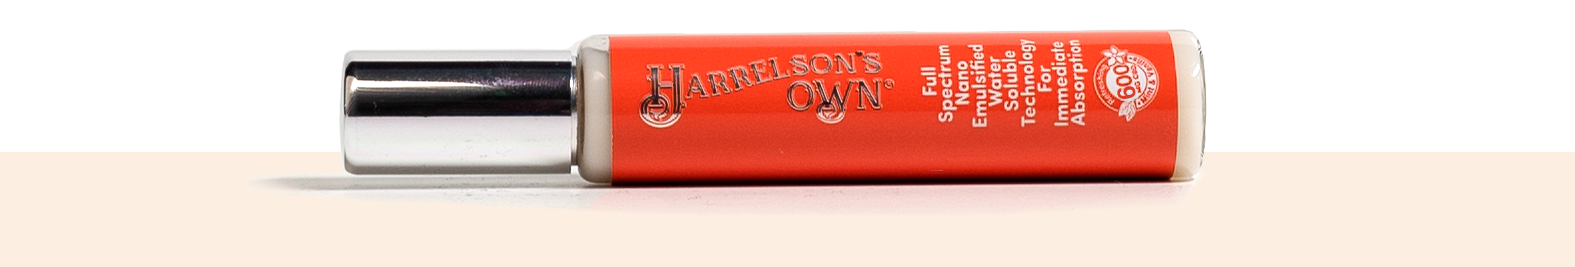 Harrelson's Own Spray Orange Label.